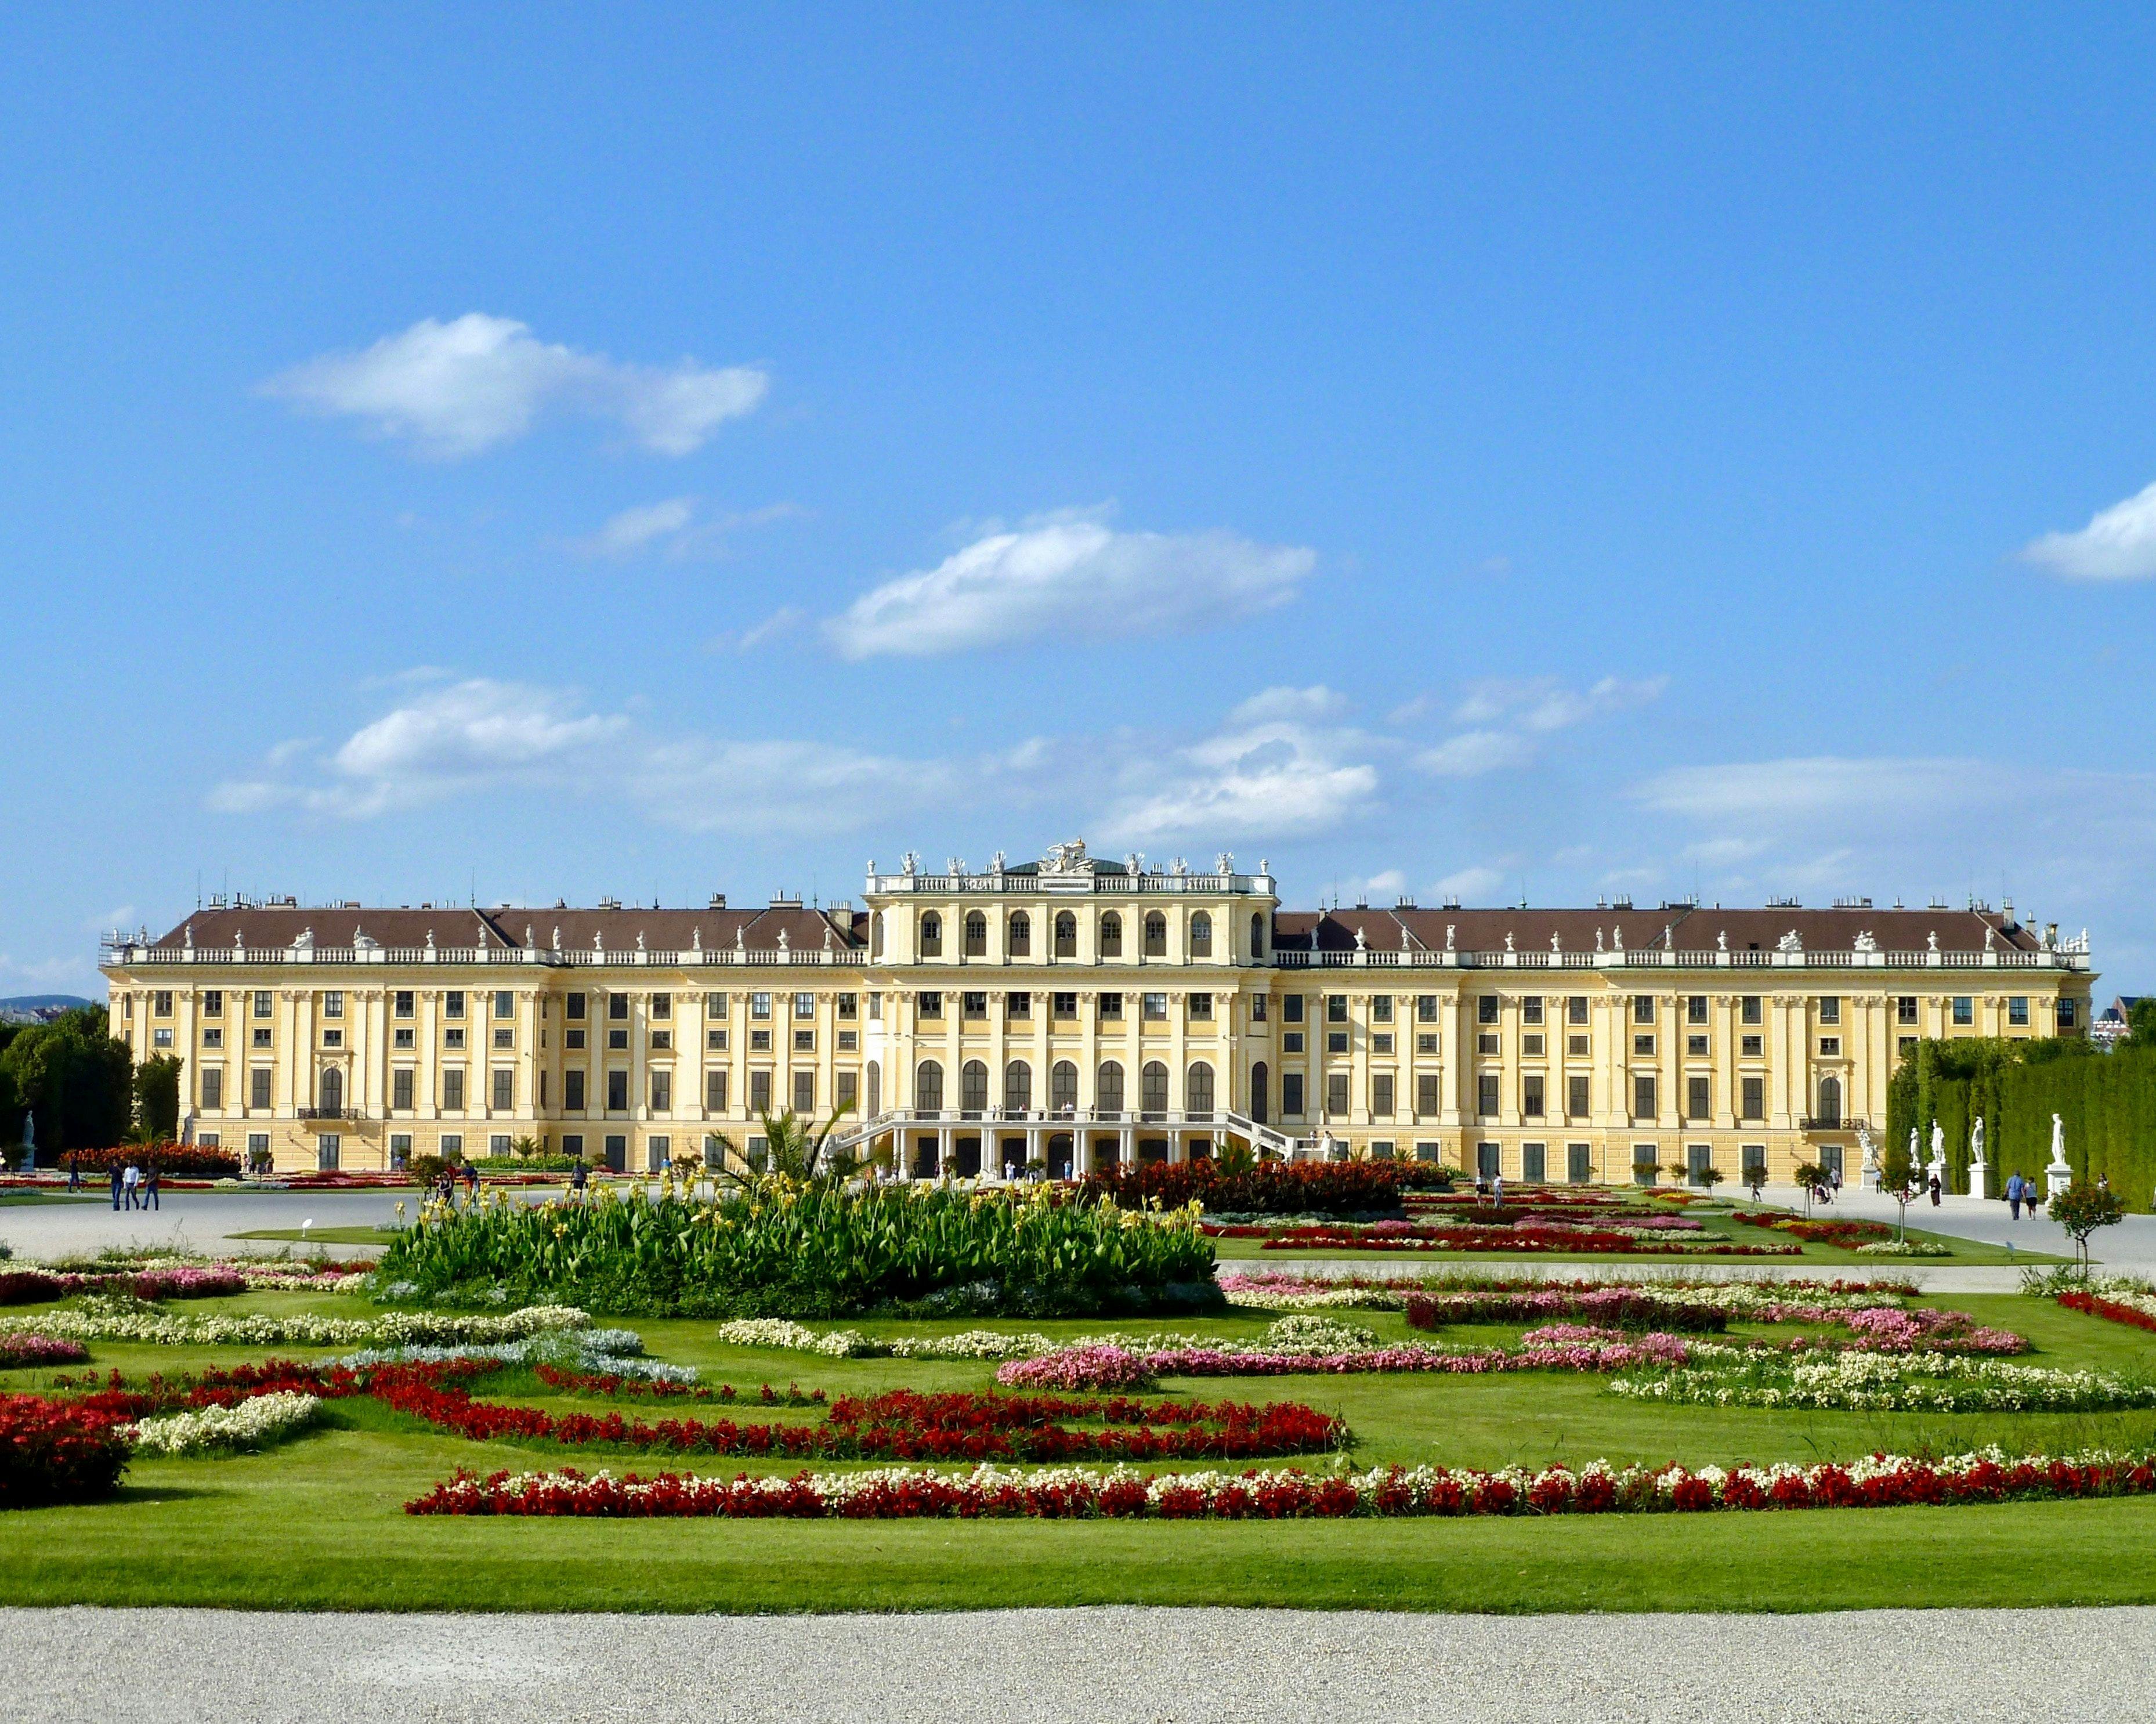 Schönbrunn Palace in Vienna in Austria